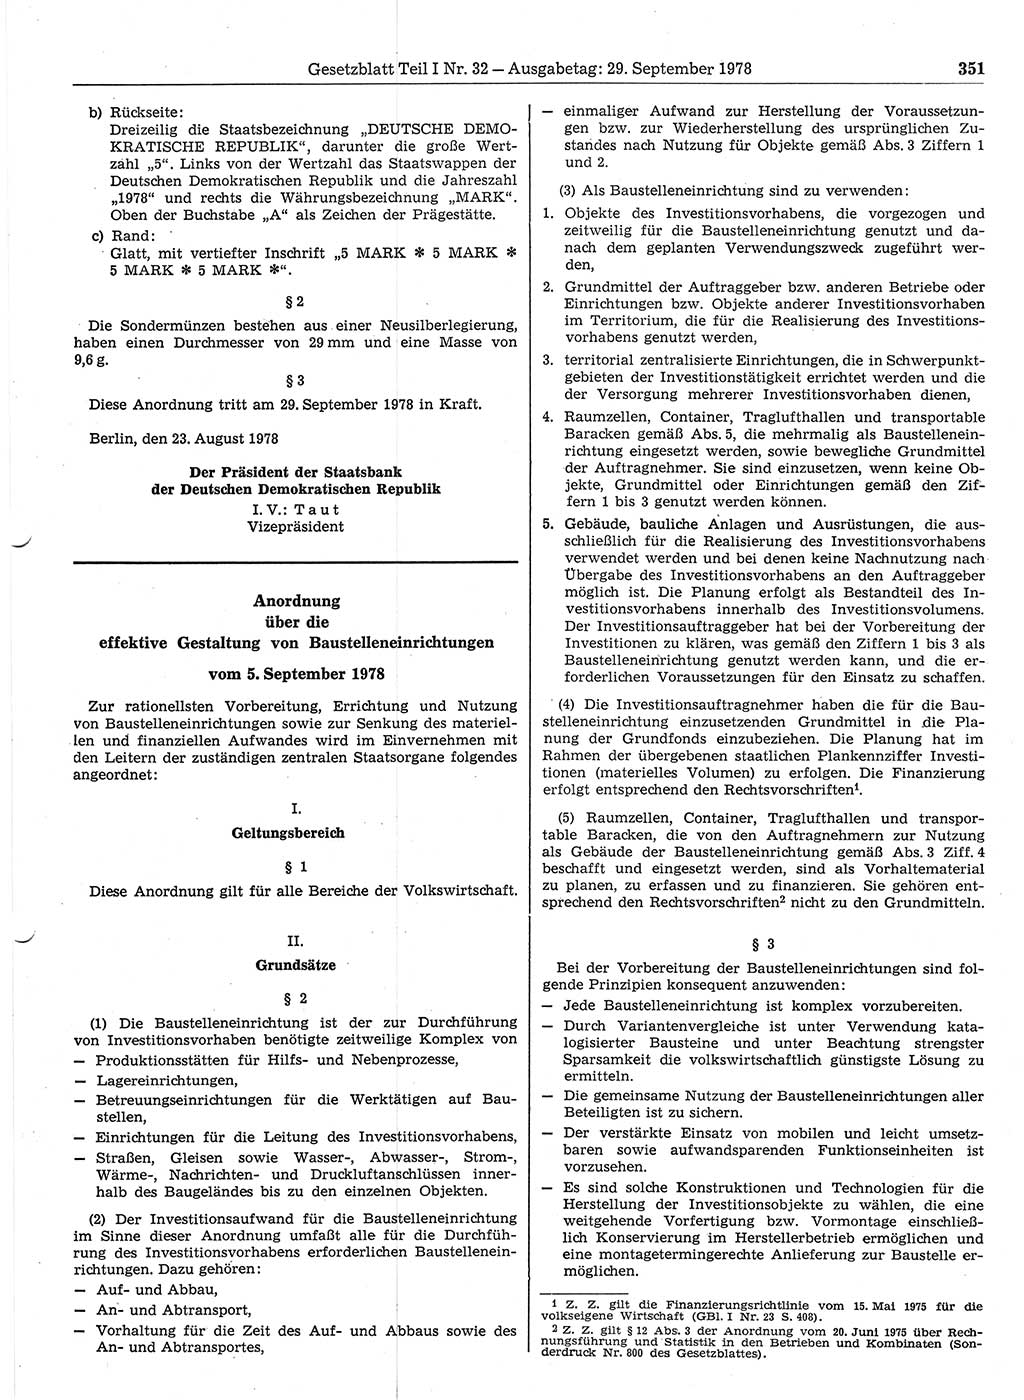 Gesetzblatt (GBl.) der Deutschen Demokratischen Republik (DDR) Teil Ⅰ 1978, Seite 351 (GBl. DDR Ⅰ 1978, S. 351)